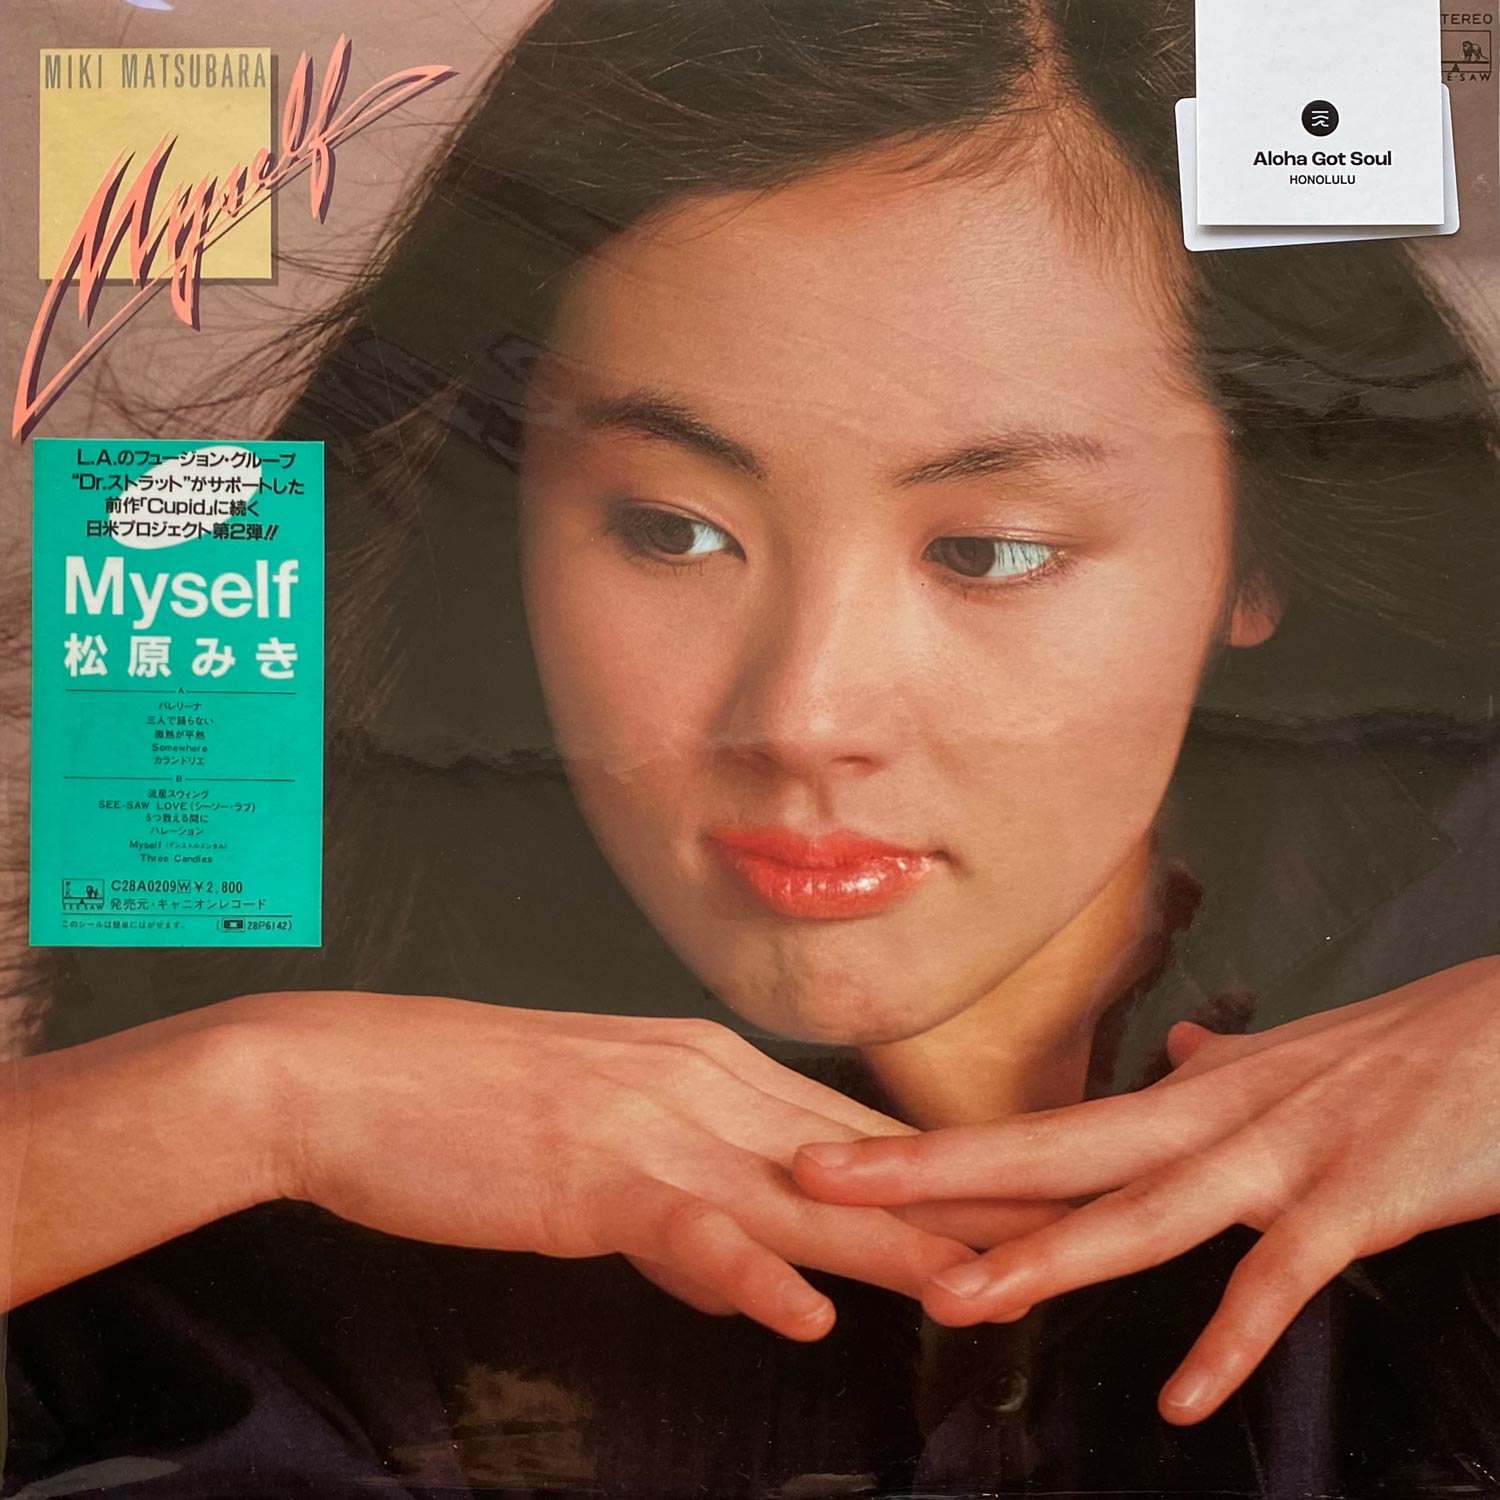 Miki Matsubara - Myself